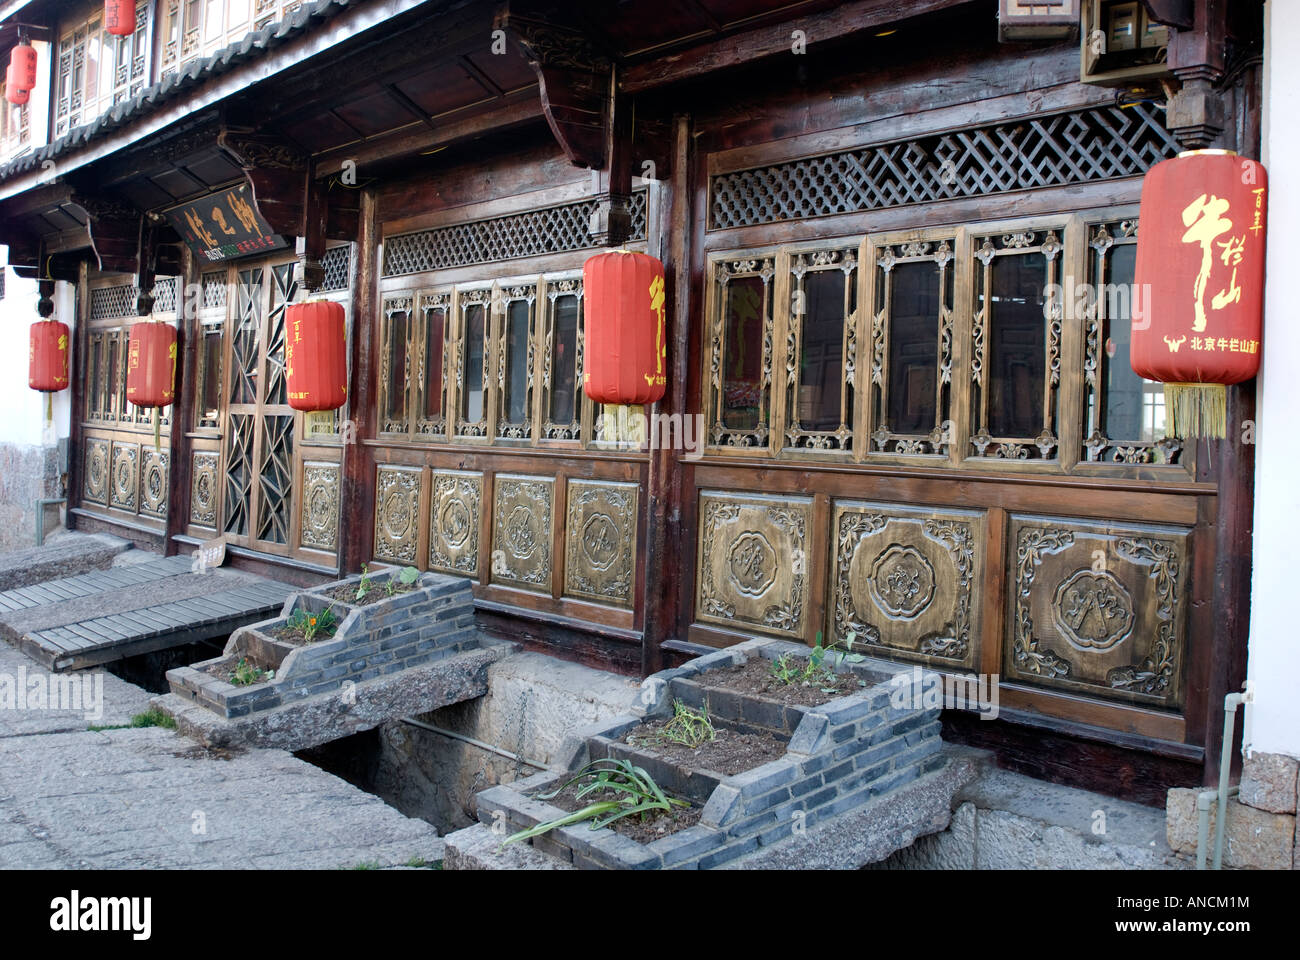 Lanternes rouges ornent un restaurant en bois dans la région de Lijiang, Yunnan, Chine situé à côté d'un ruisseau, en donnant à la ville son titre:Venise de Chine Banque D'Images